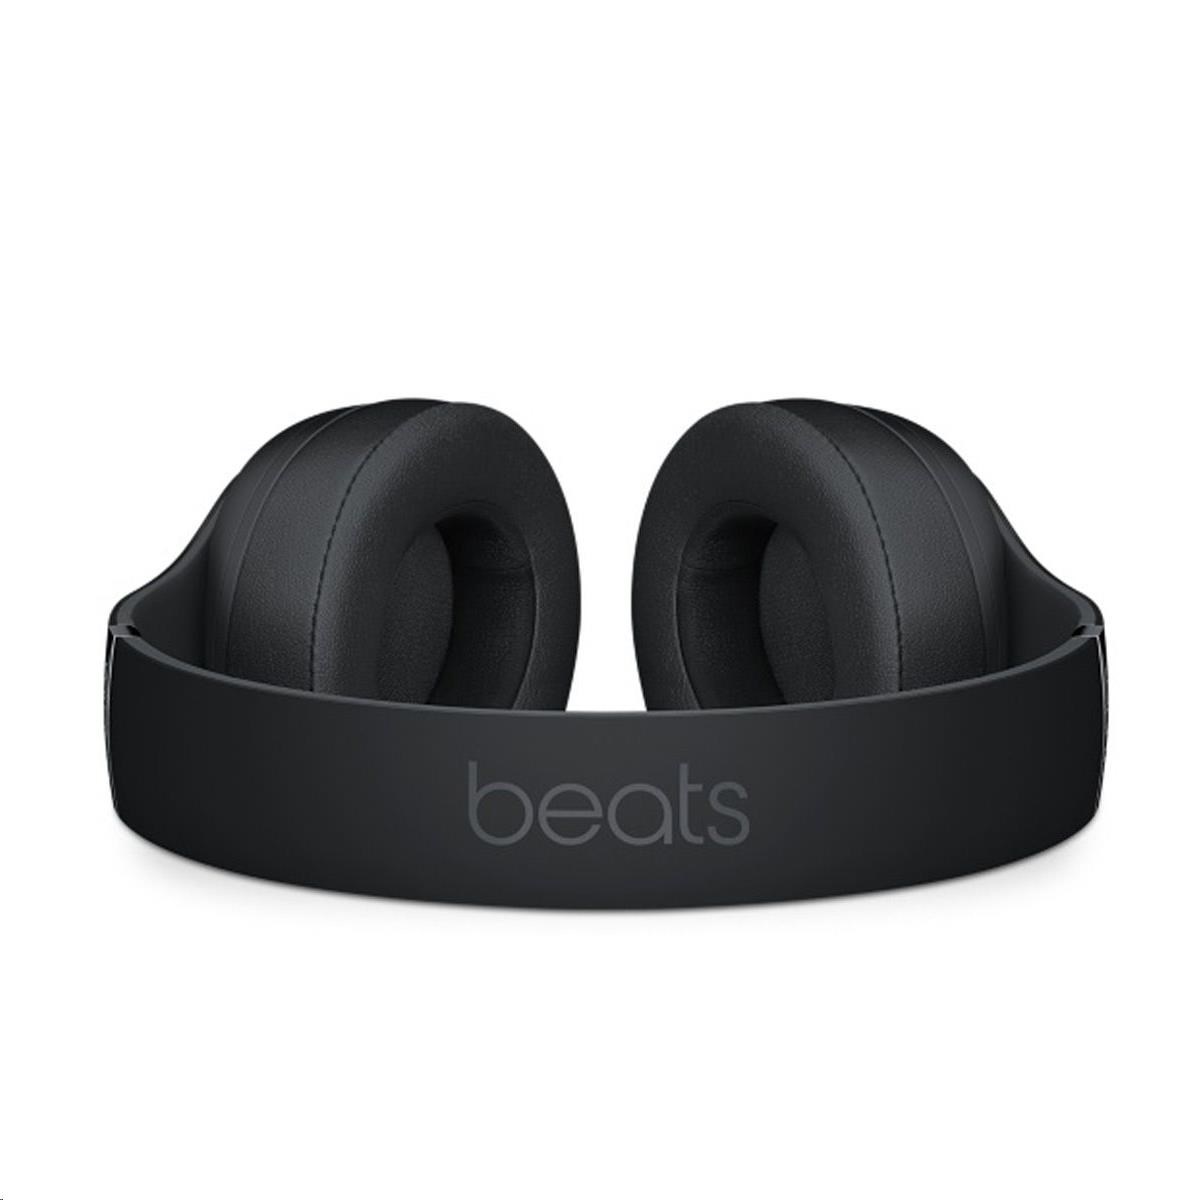 Beats Studio3 Wireless Over-Ear Headphones - Matte Black6 